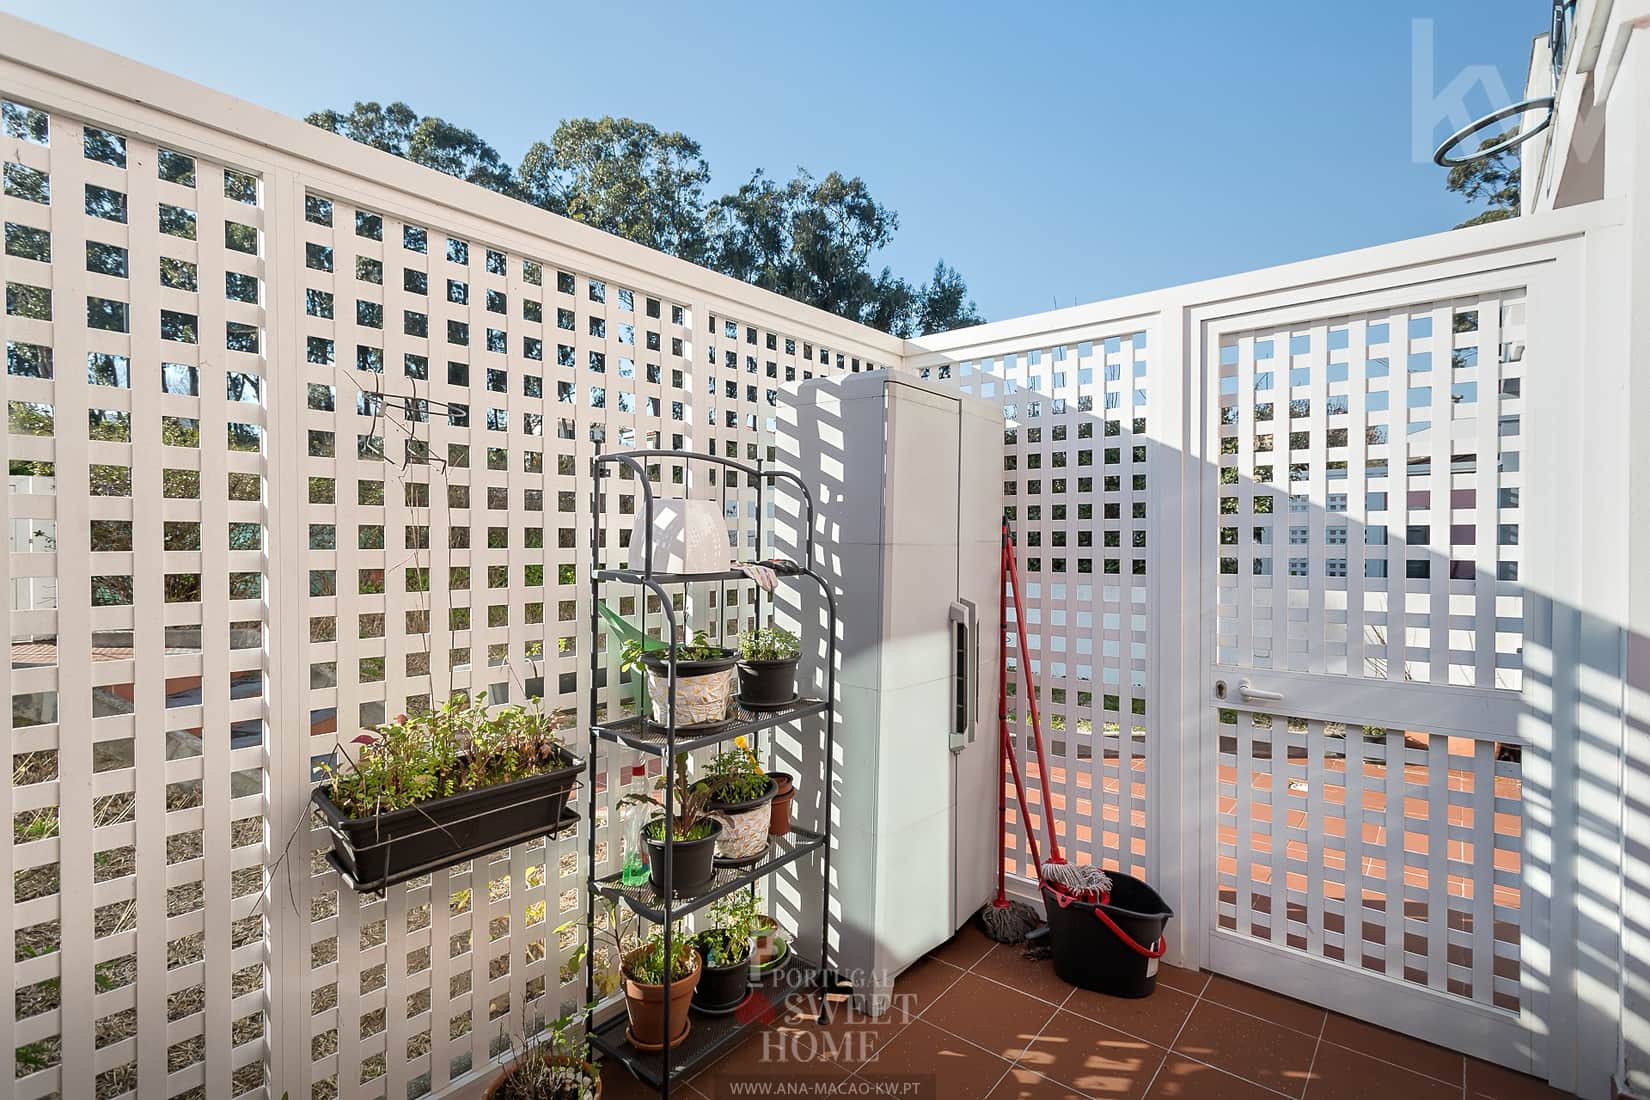 Terraço (14 m²) integrado num amplo logradouro com jardim (56 m²) 